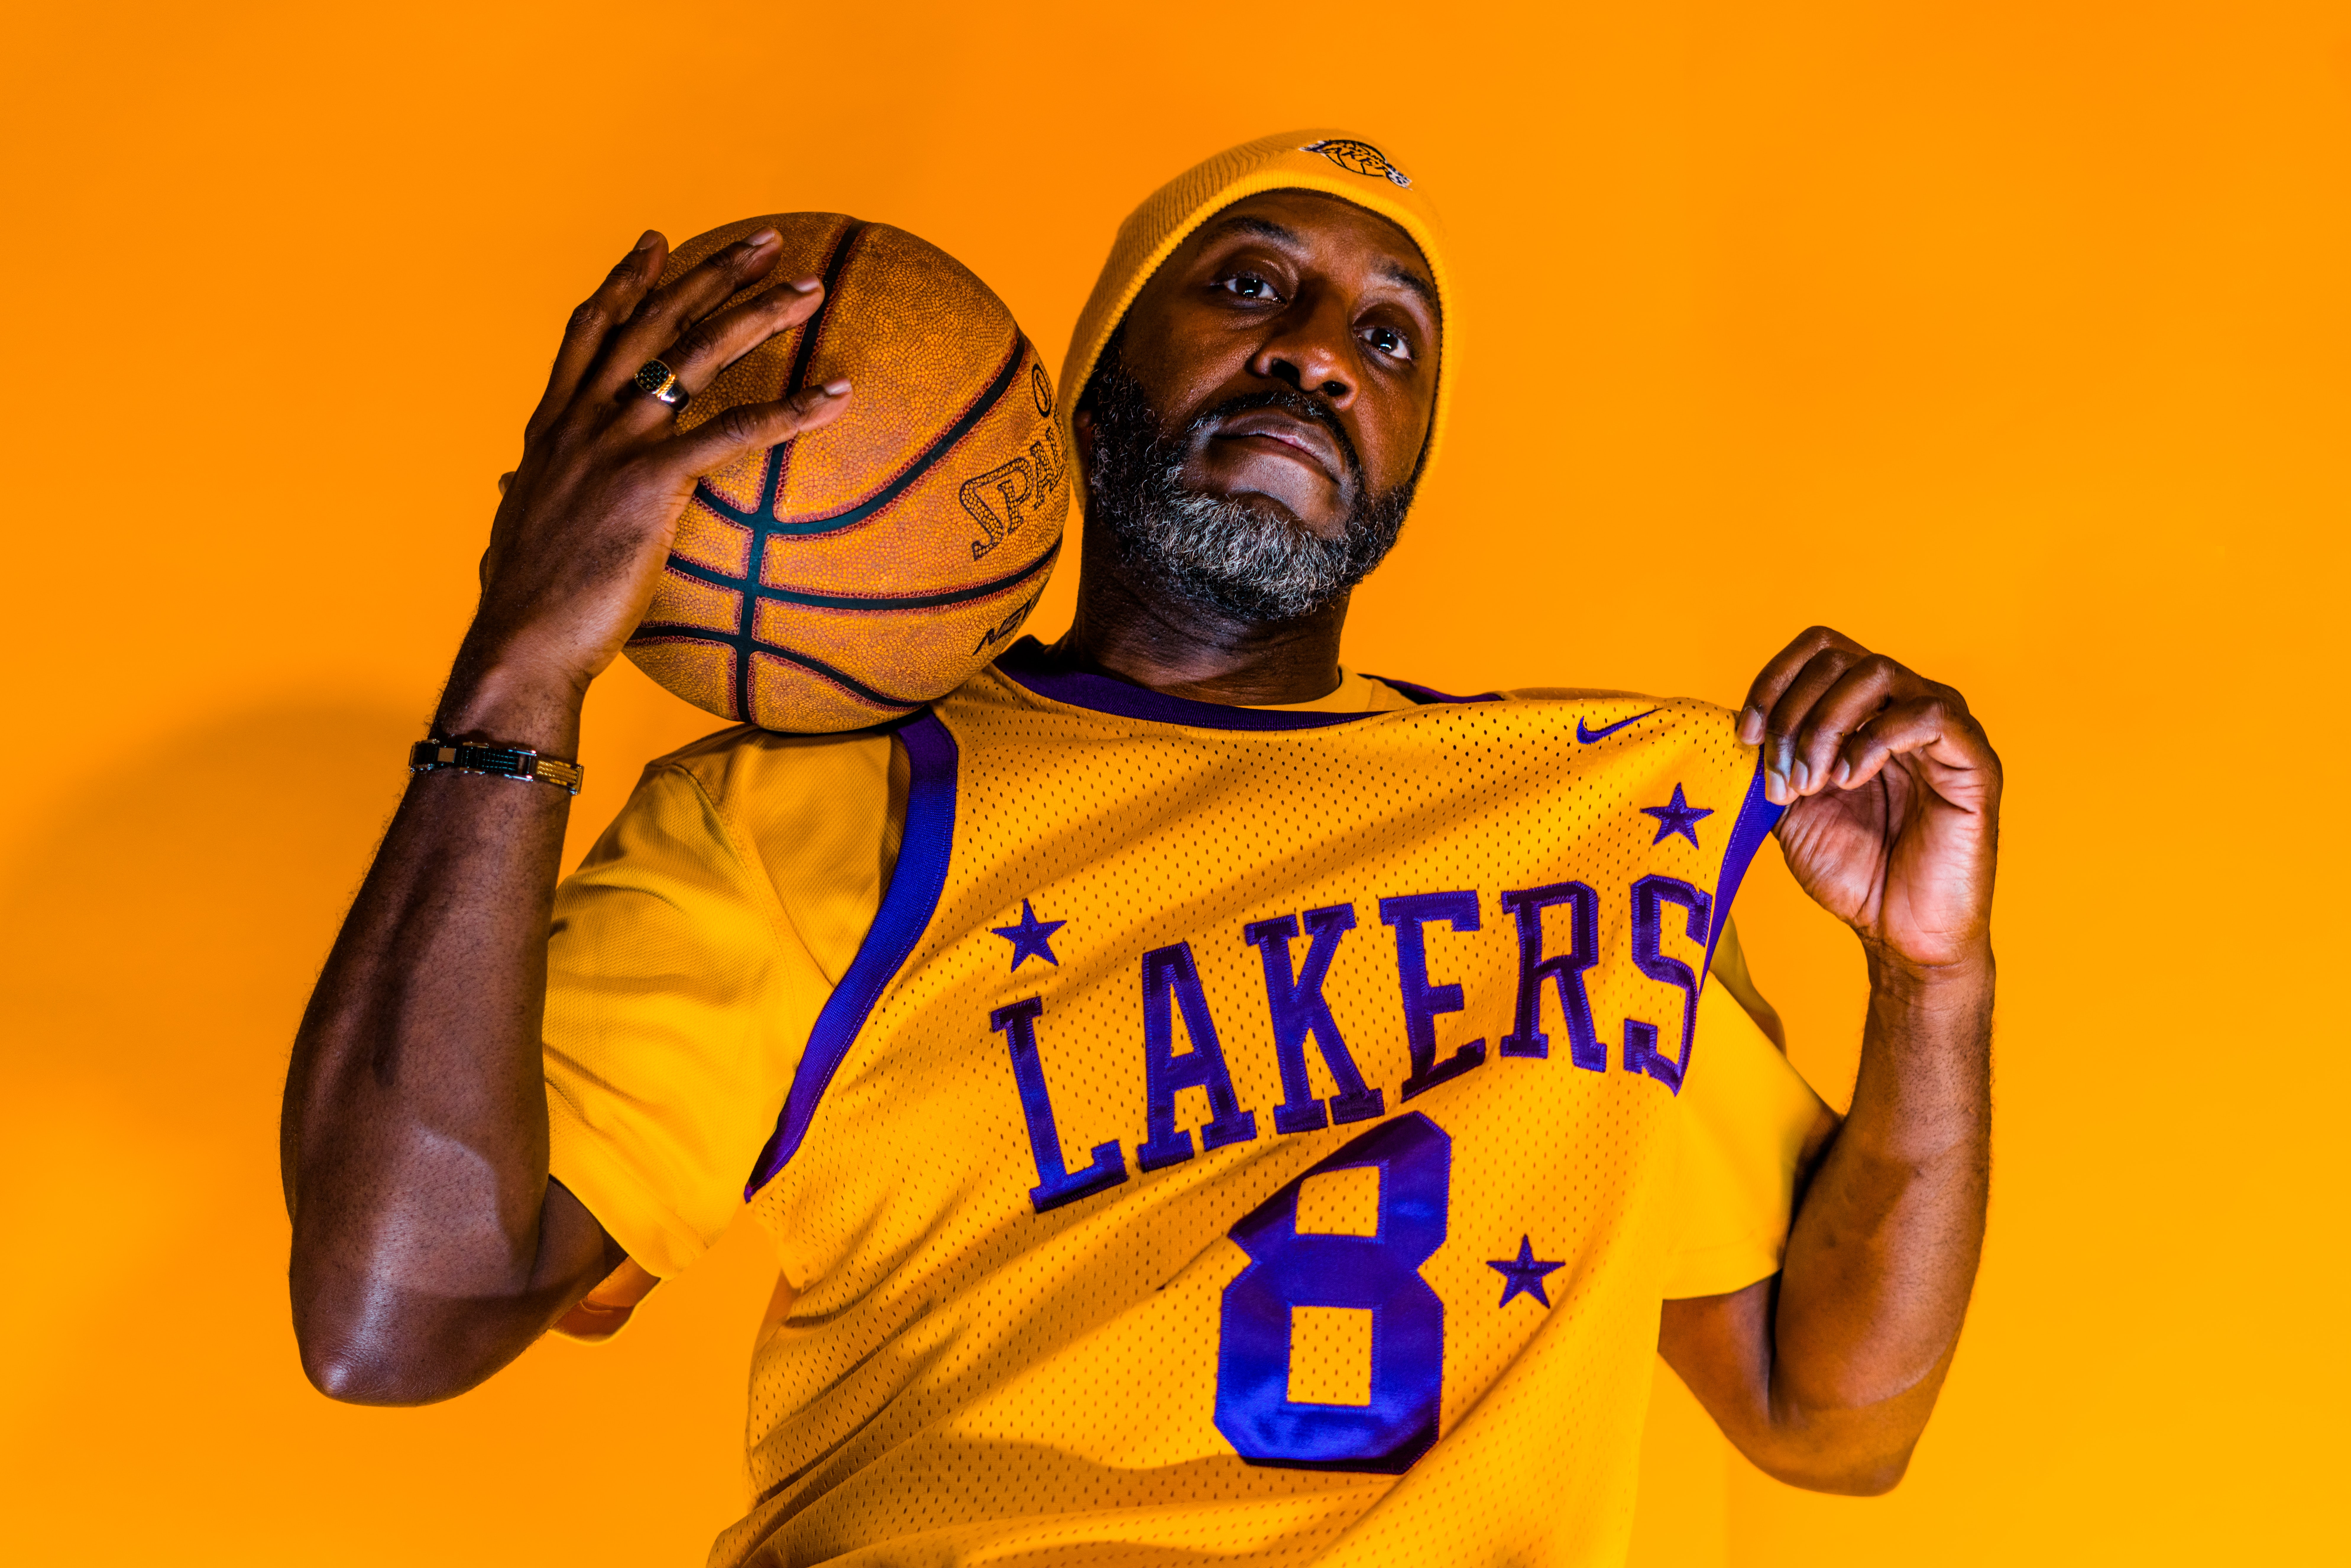 Los Angeles Lakers Uniform 2 pc. - NBA - Basketball